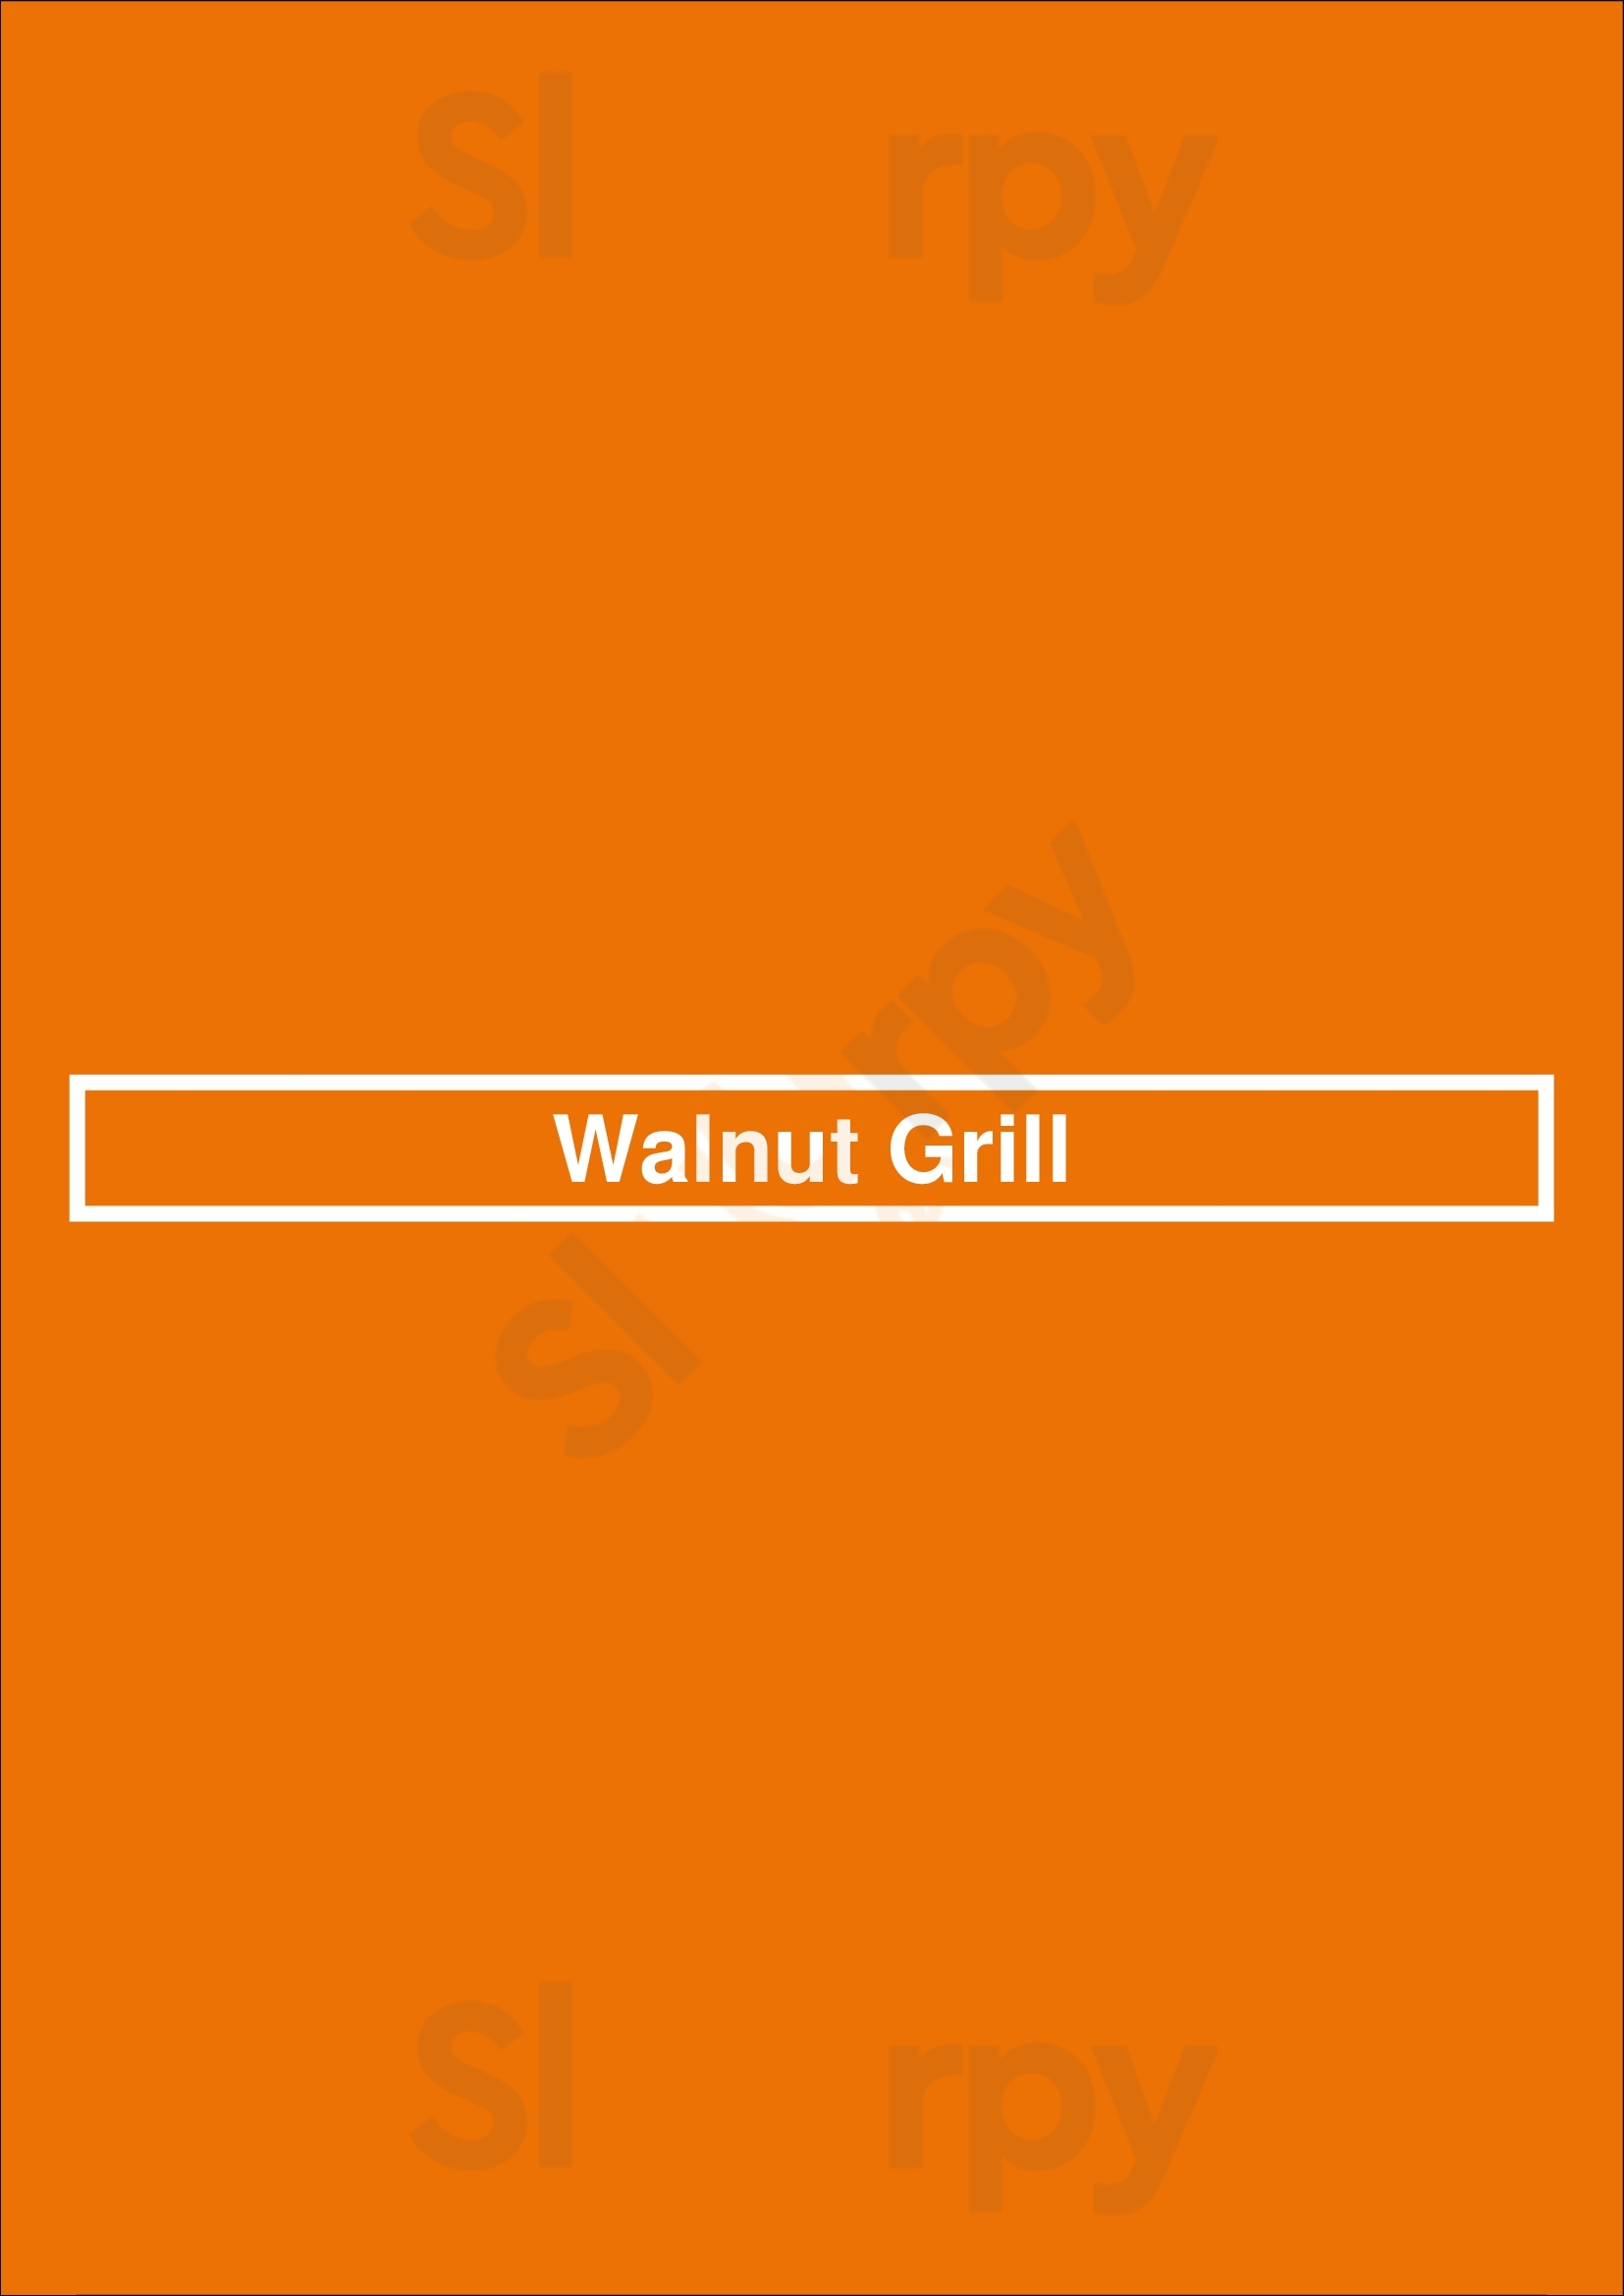 Walnut Grill Ellisville Menu - 1